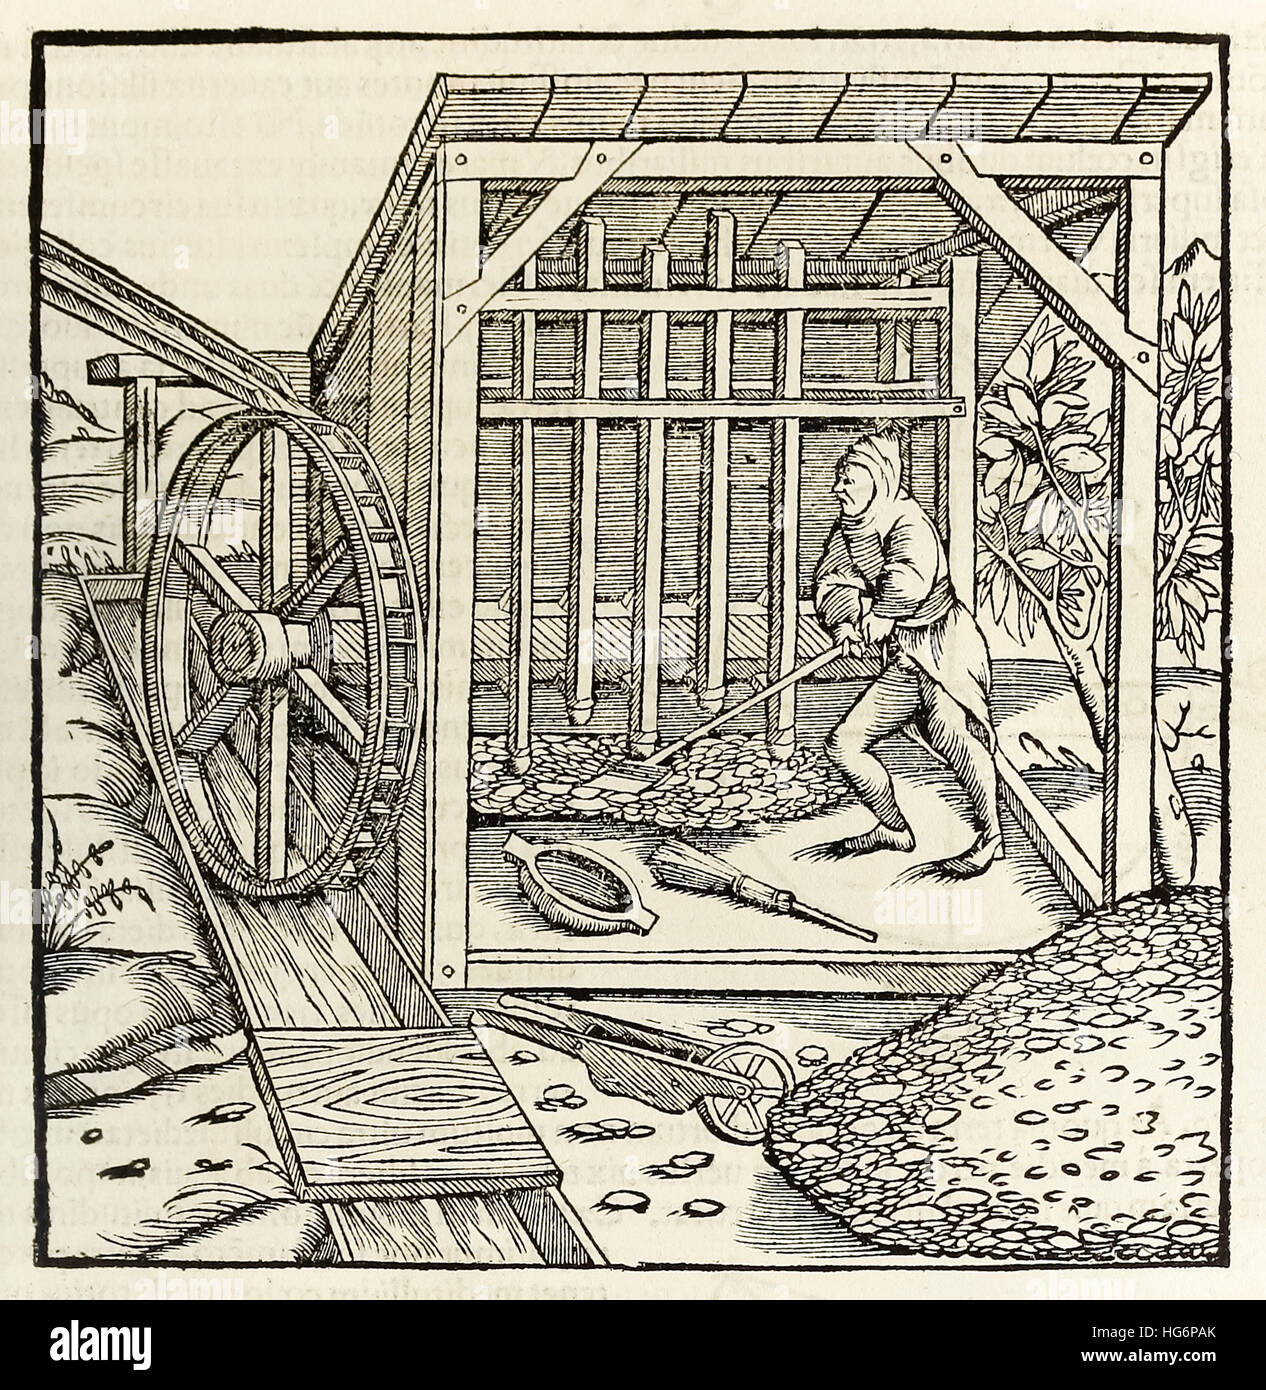 Der Bergbau mit Wasserrad, Holzschnitt von 1550-Ausgabe der "Cosmographia" von Sebastian Münster (1488-1552). Siehe Beschreibung für mehr Informationen. Stockfoto